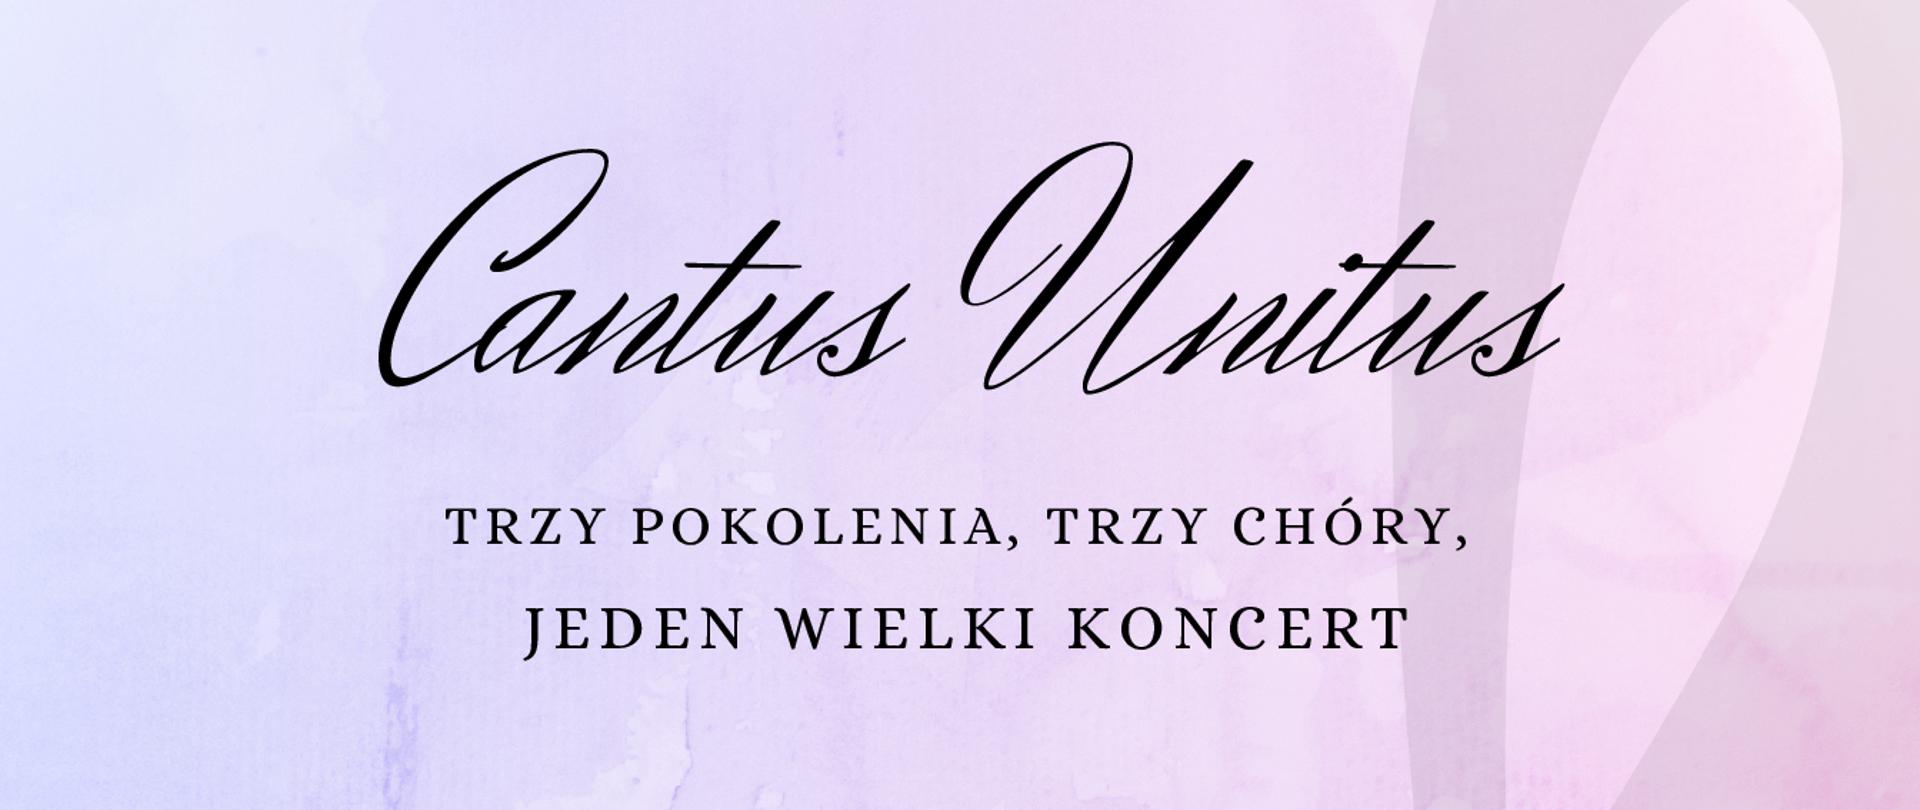 Plakat w kolorze pastelowym z czarnym napisami, informujący o koncercie chórów w Sycowie